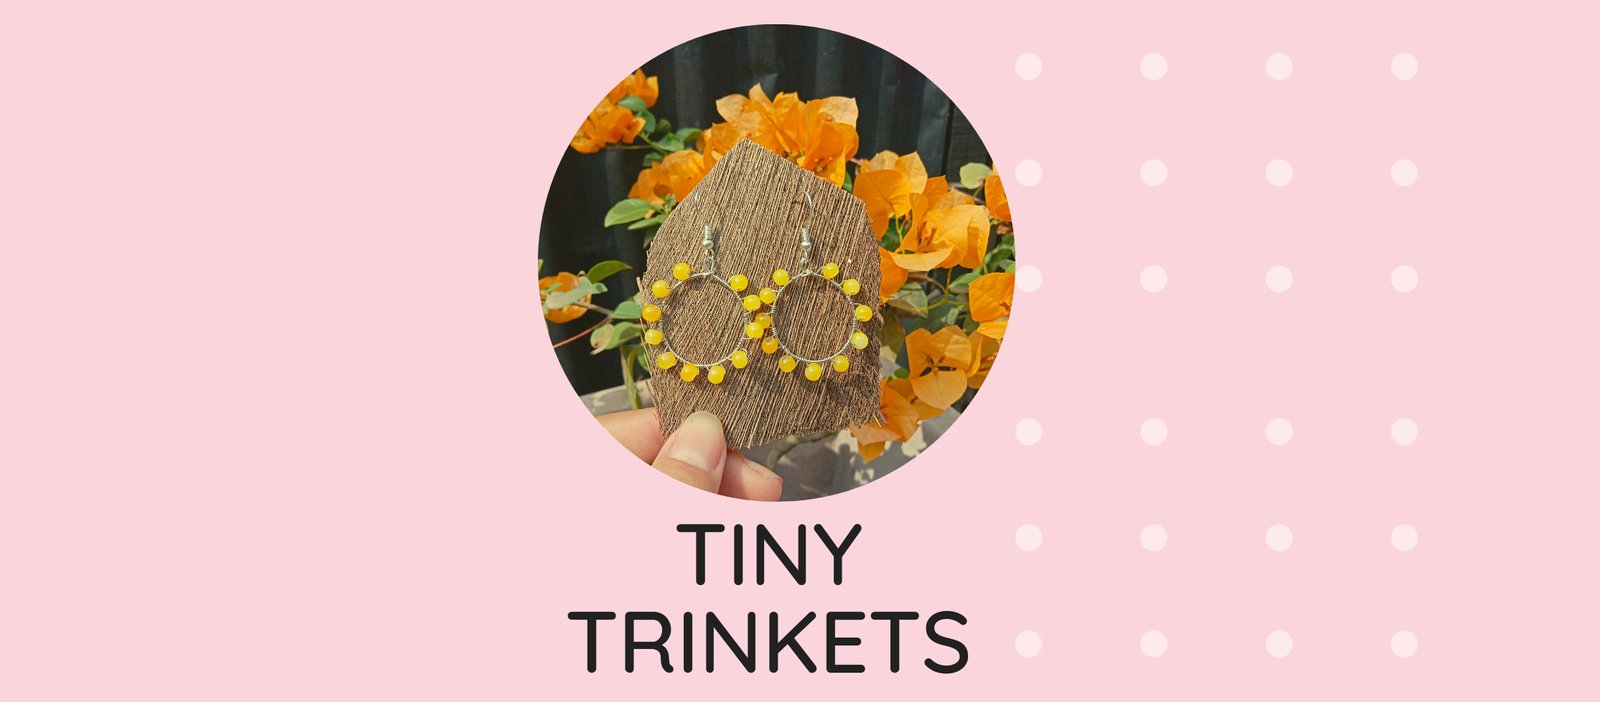 Tiny Trinkets